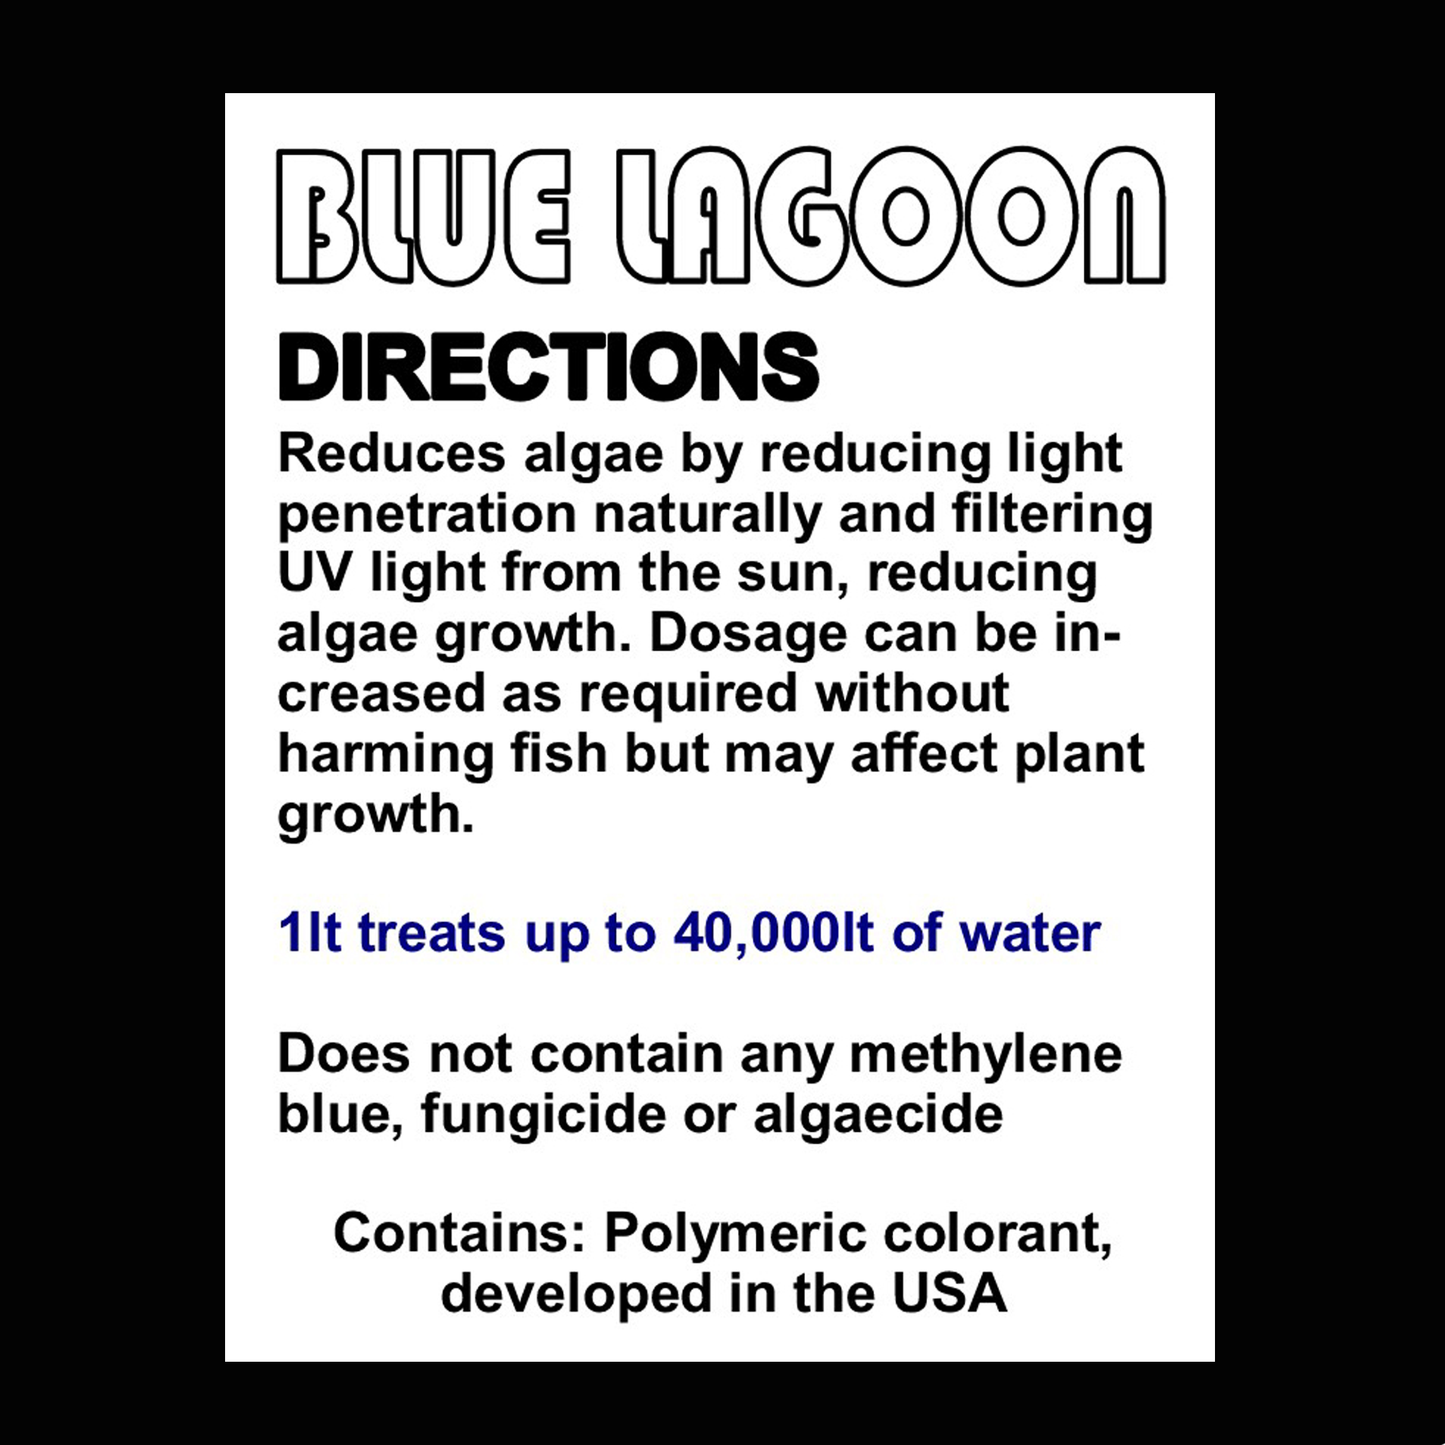 Blue Lagoon Block out blue pond dye 500ml